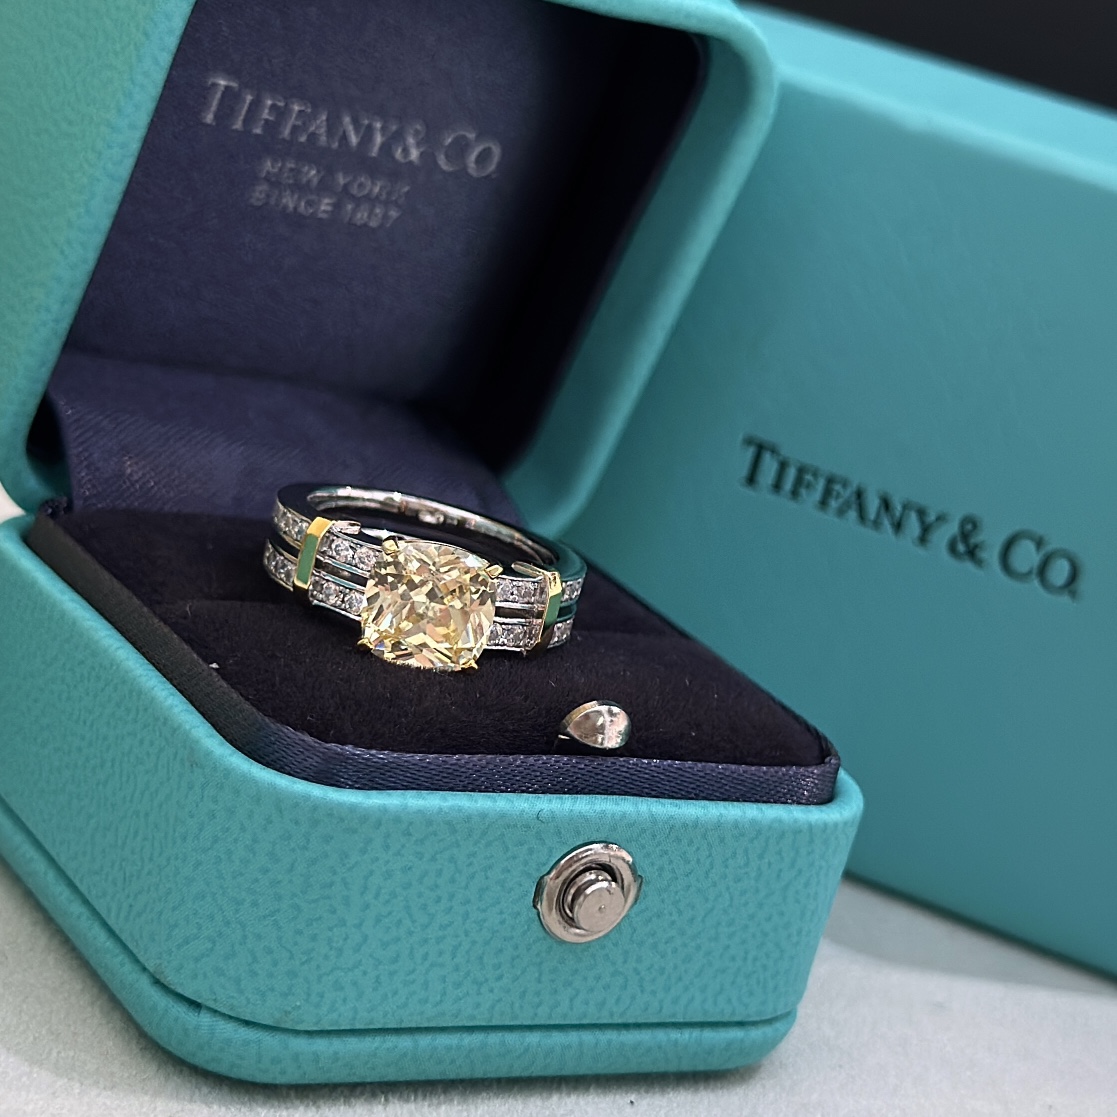 Tiffany & co edge ring